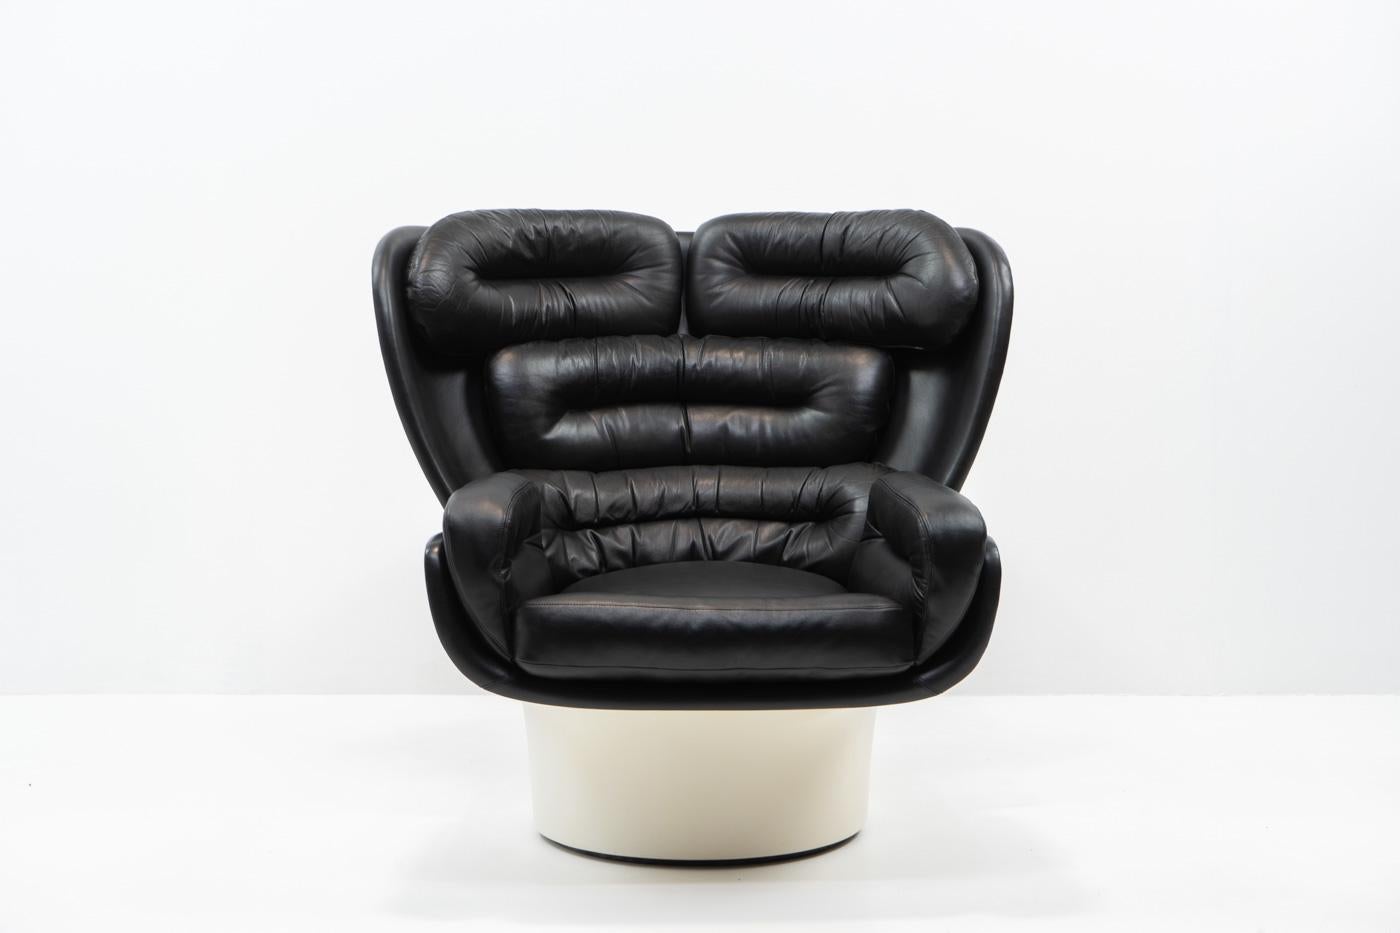 La chaise Elda de Joe Colombo (1963) est un chef-d'œuvre du design d'après-guerre : 

Le design est encore aujourd'hui considéré comme futuriste, avec sa coque en fibre de verre moulée et sa base pivotante, offrant confort et mobilité.

Cette chaise